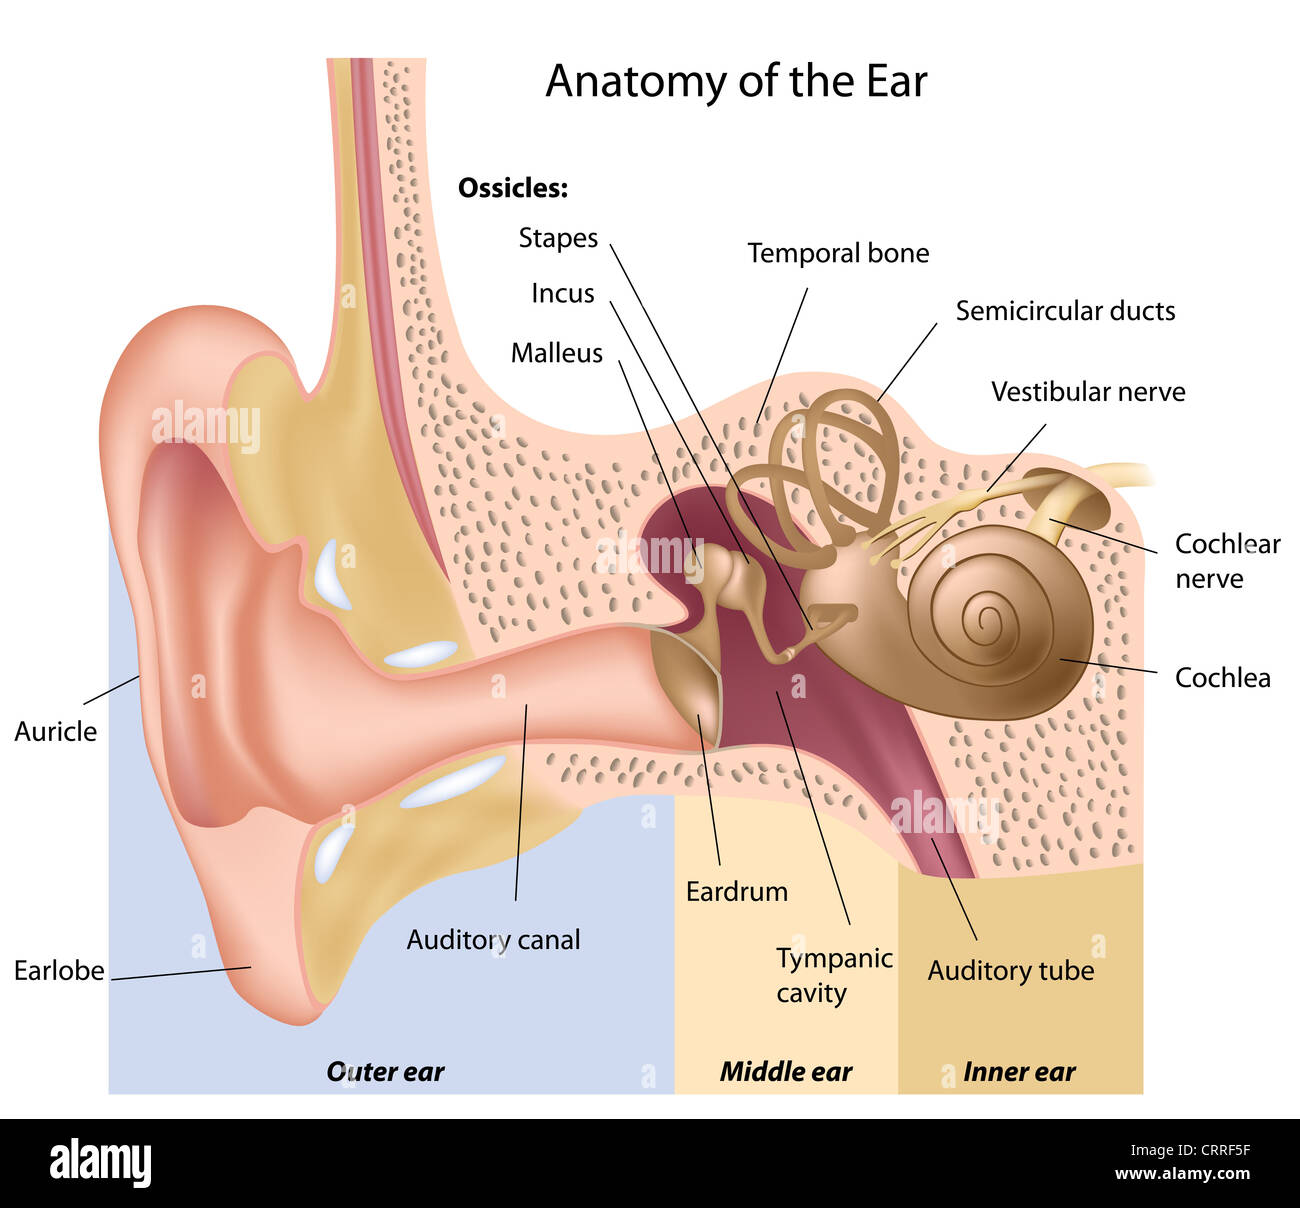 Menschliche Ohr-Anatomie Stockfotografie - Alamy